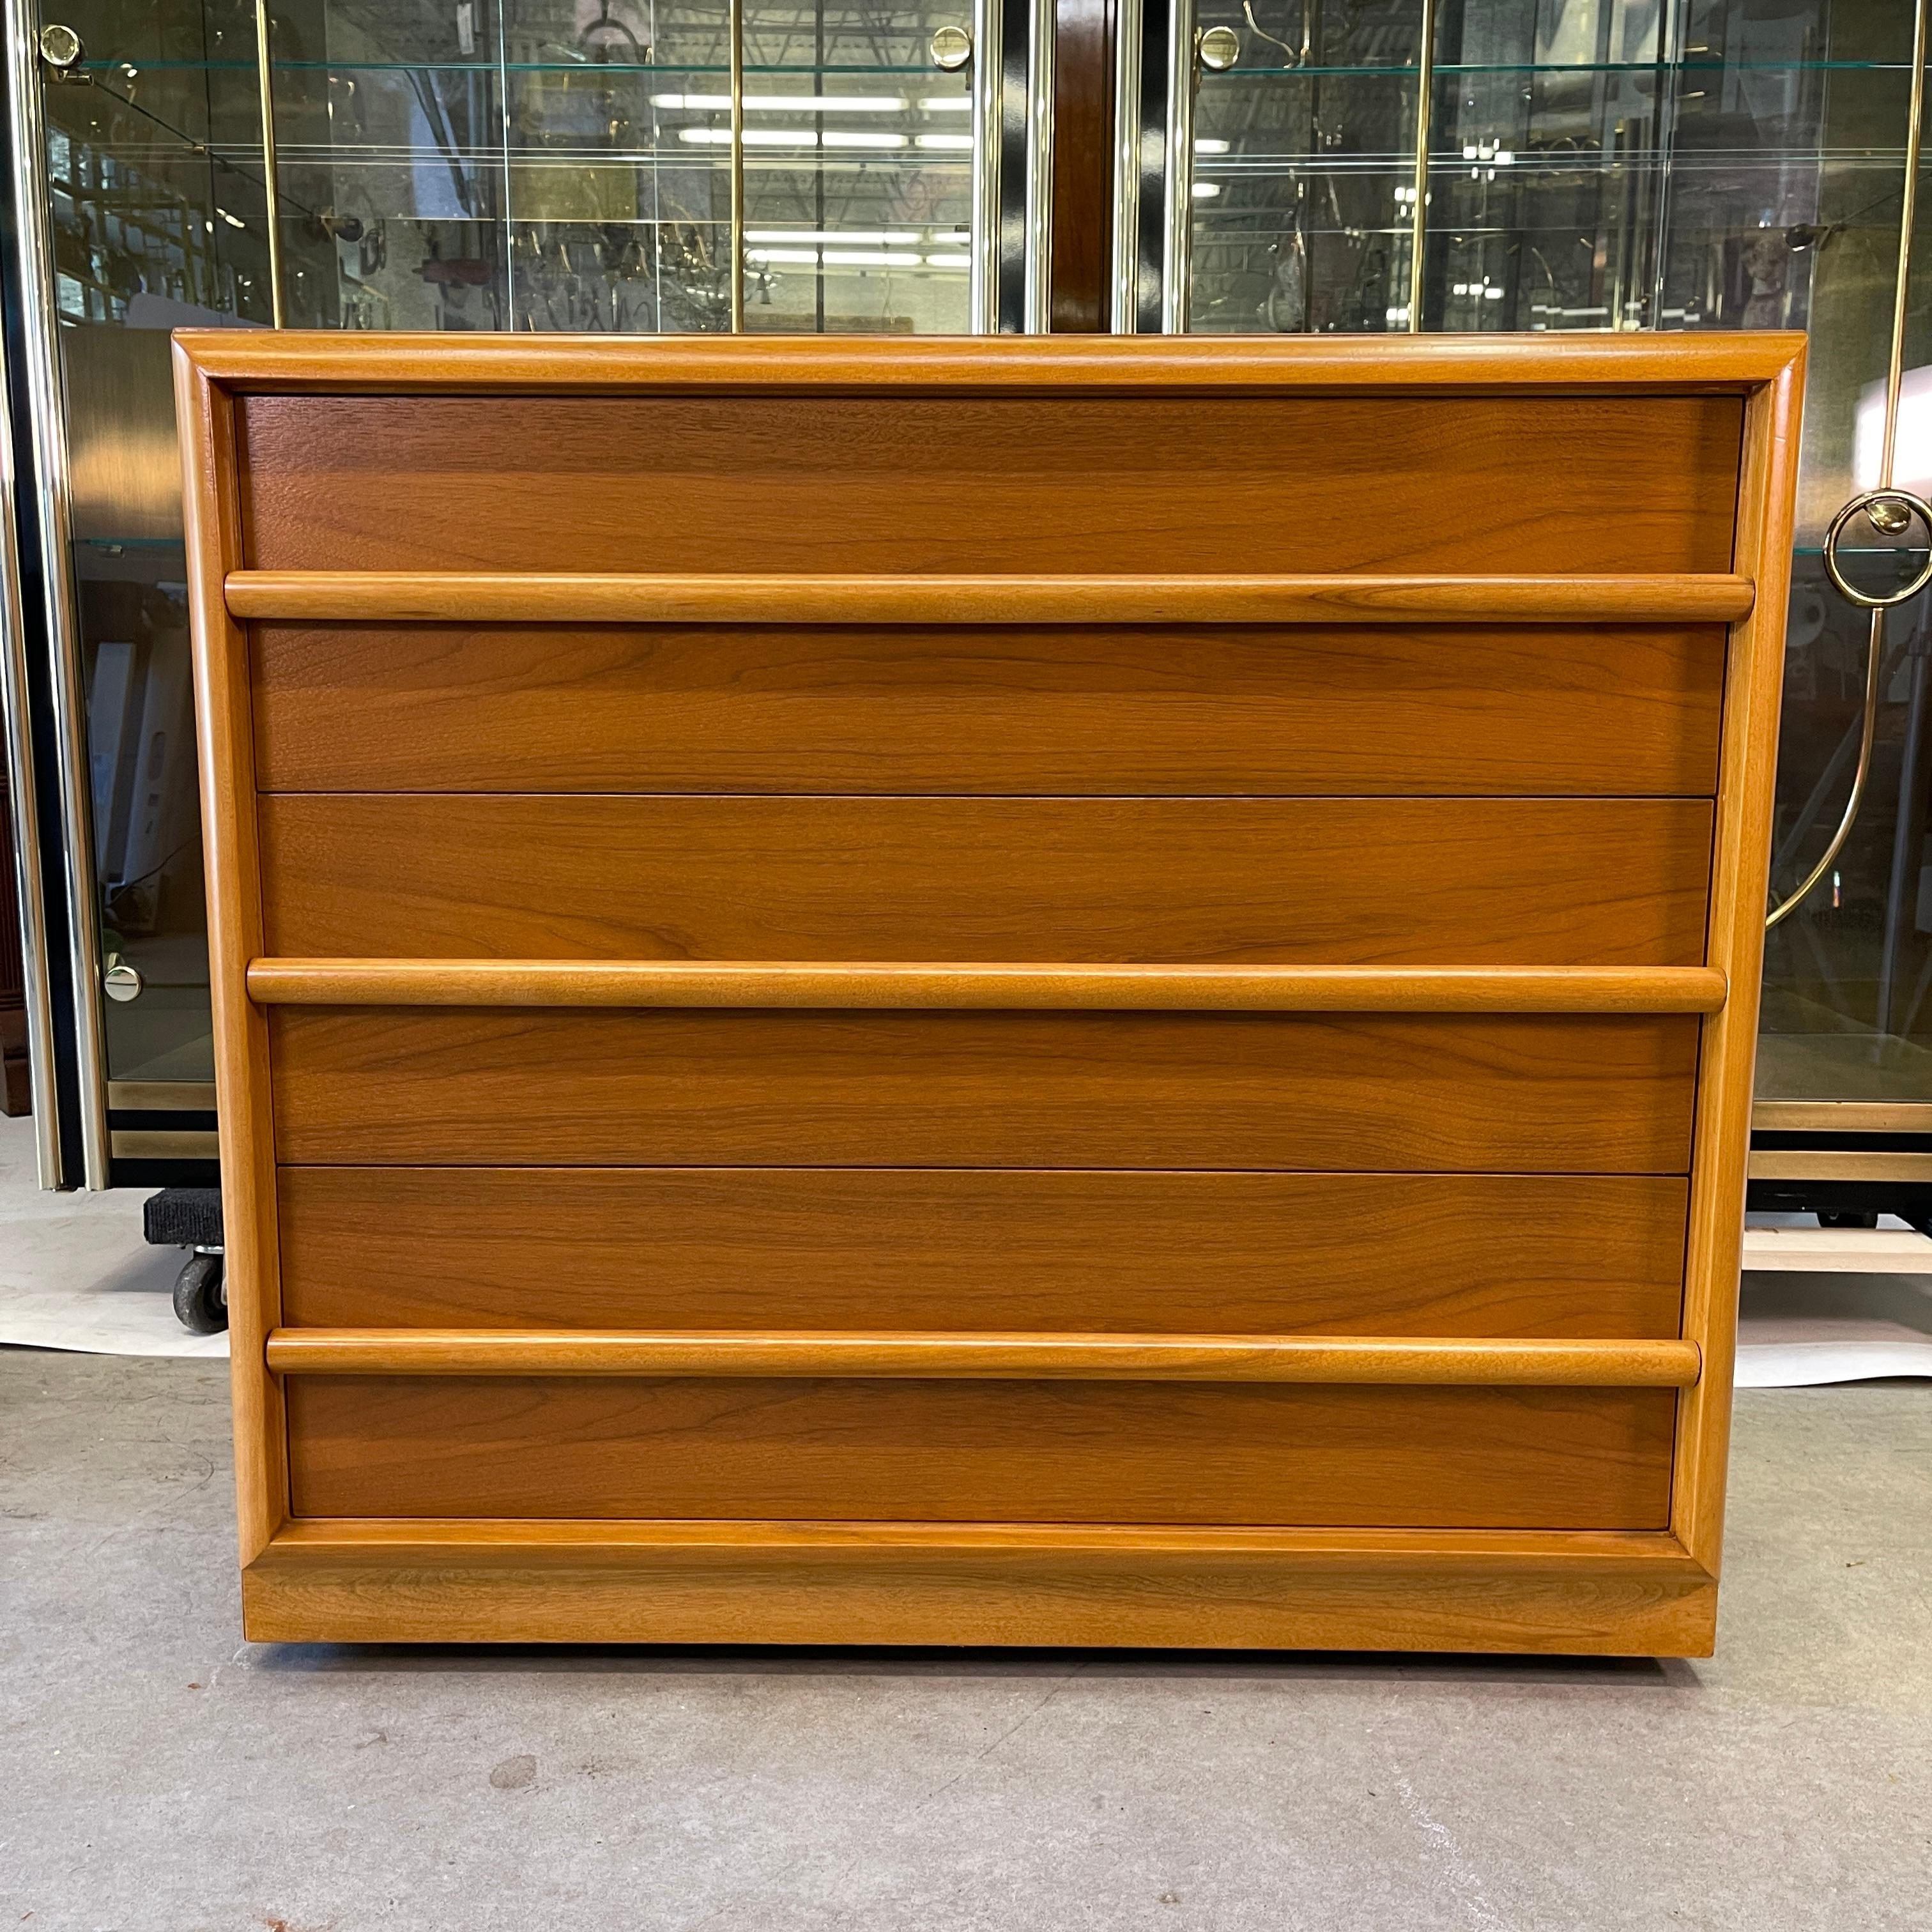 Zwei amerikanische Kommoden der klassischen Moderne, entworfen von Robsjohn-Gibbings für Widdicomb Furniture Co. in gemasertem Nussbaum mit kontrastierenden Ahornleisten. Beide haben ein Originaletikett in der oberen Schublade. Gekauft bei Paine